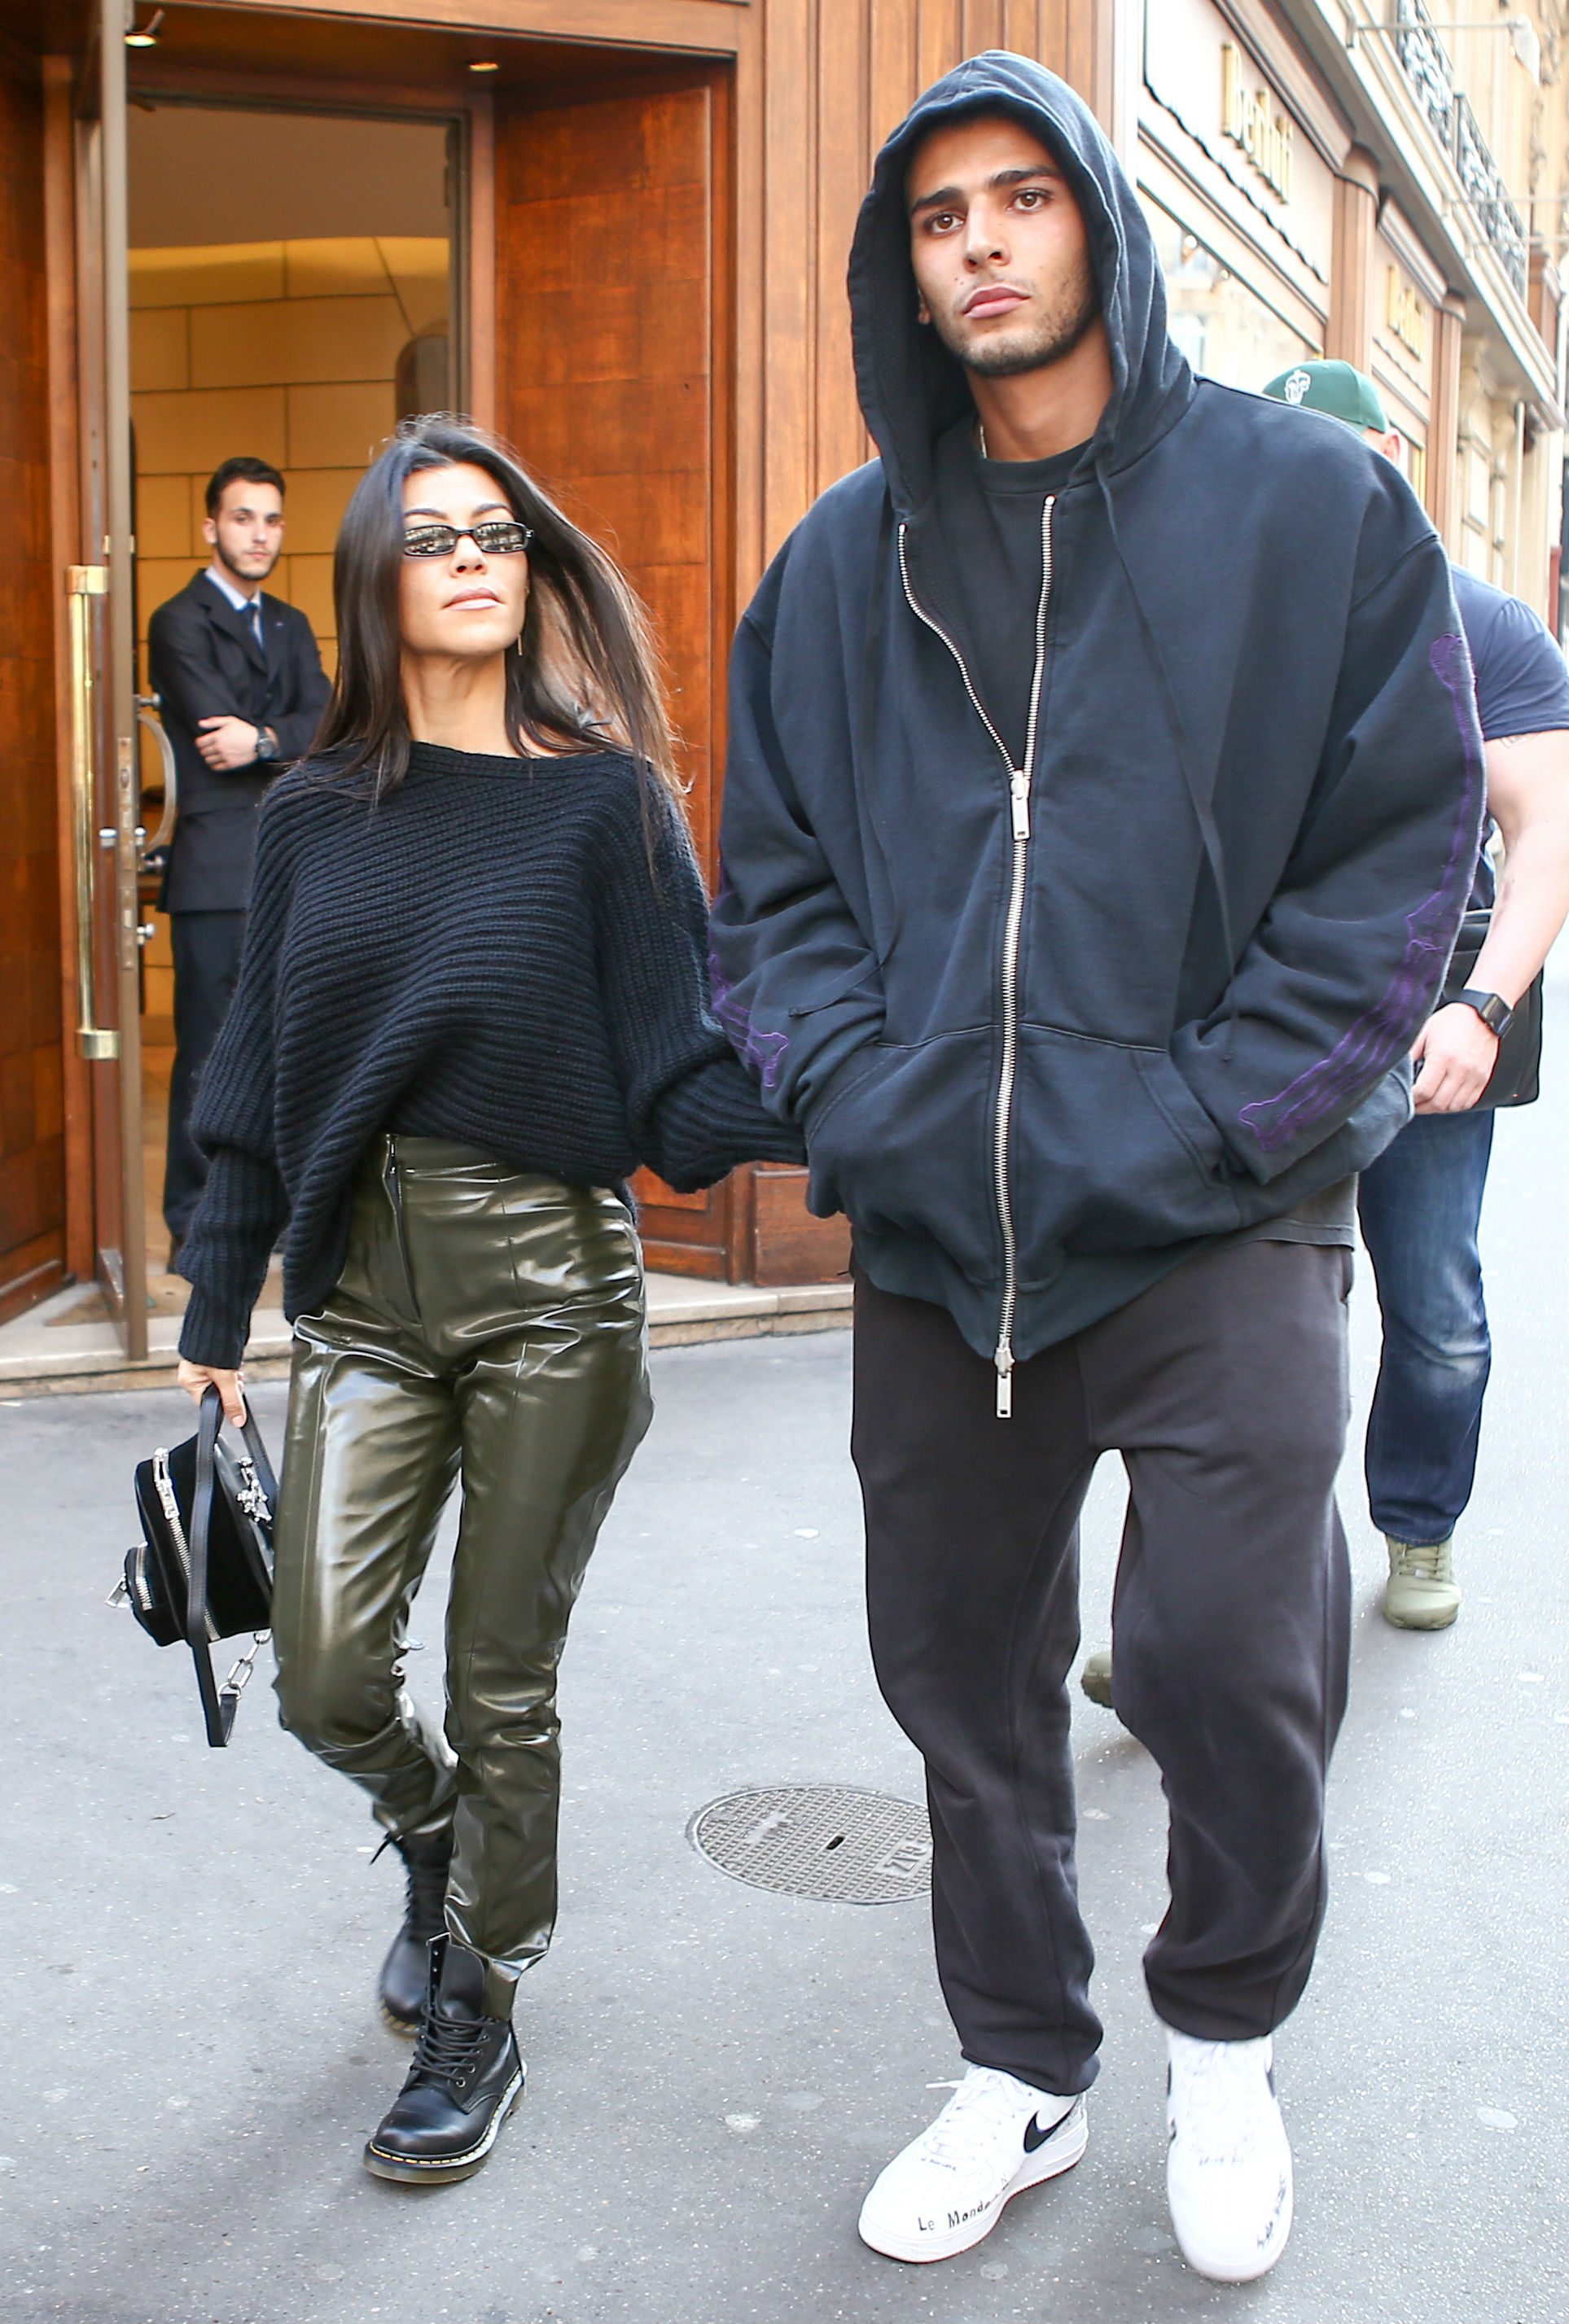 Ett annat kärlekspar som lever life är Scotts ex Kourtney Kardashian. Här syns hon i Paris med nya hunkiga pojkvännen Younes Bendjima.